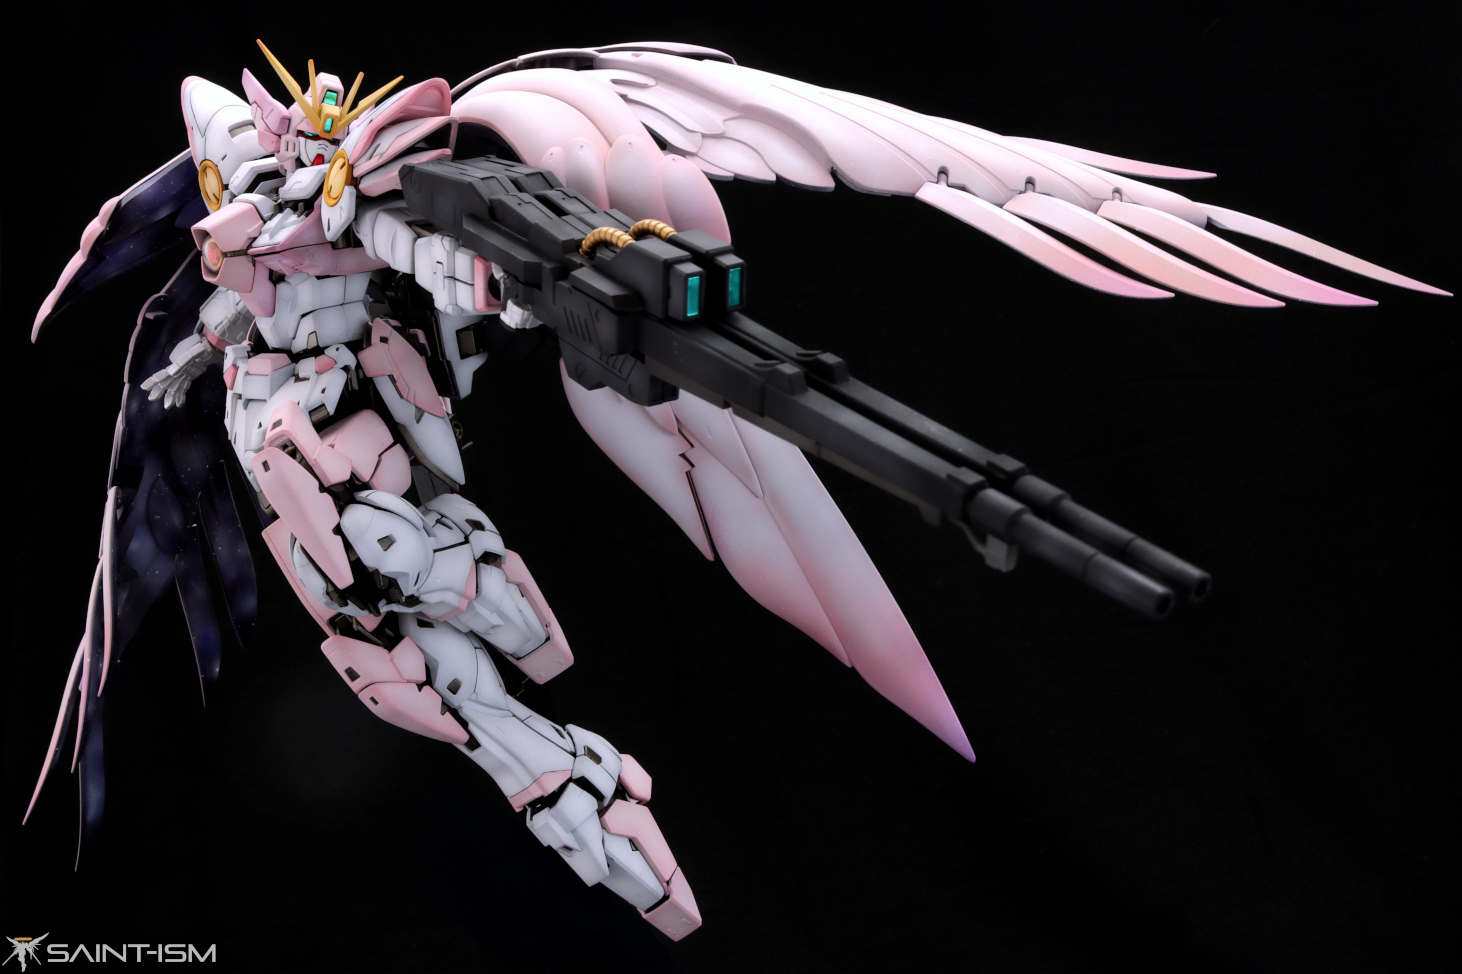 MG Wing Gundam World Zero EW ver.Ka | Saint-ism – Gaming, Gunpla